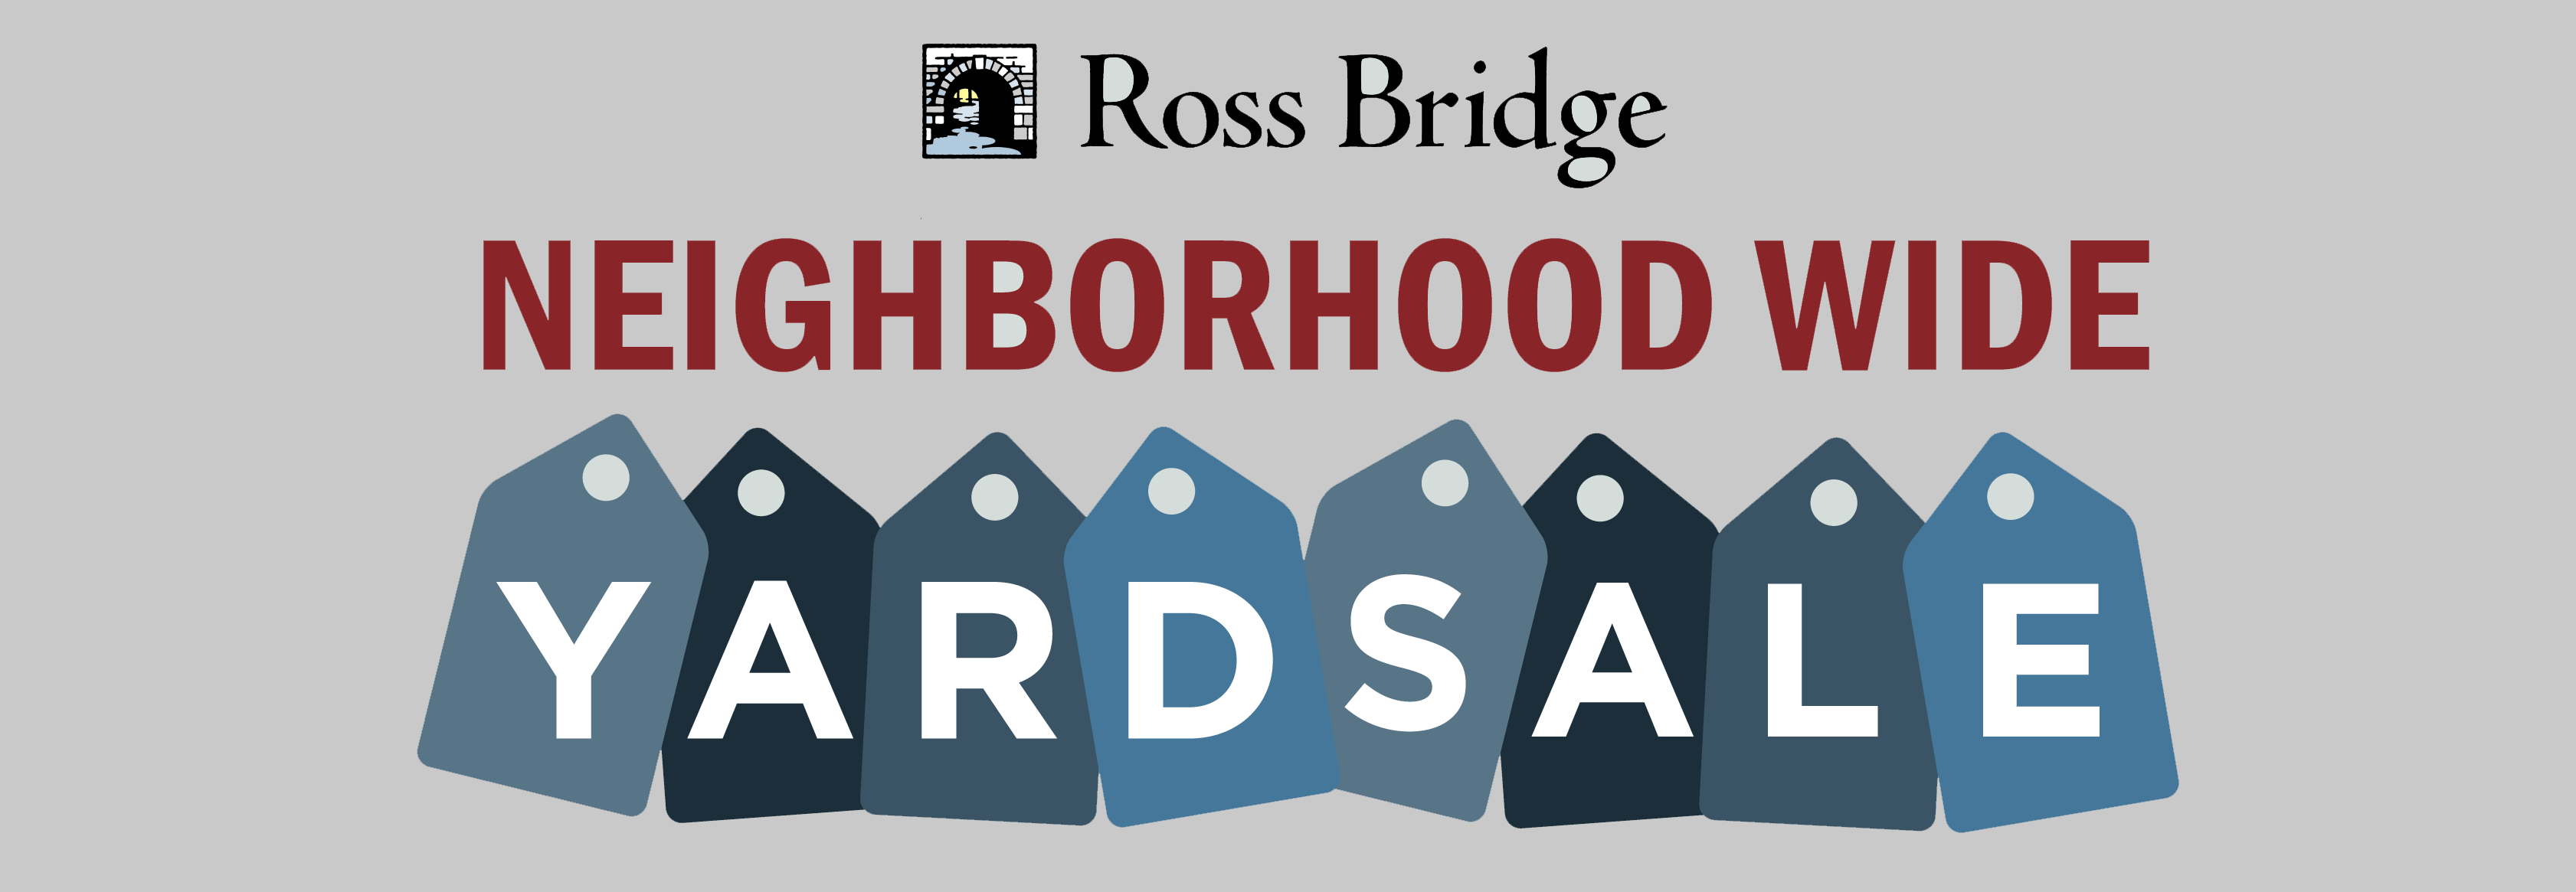 Ross Bridge Yard Sale